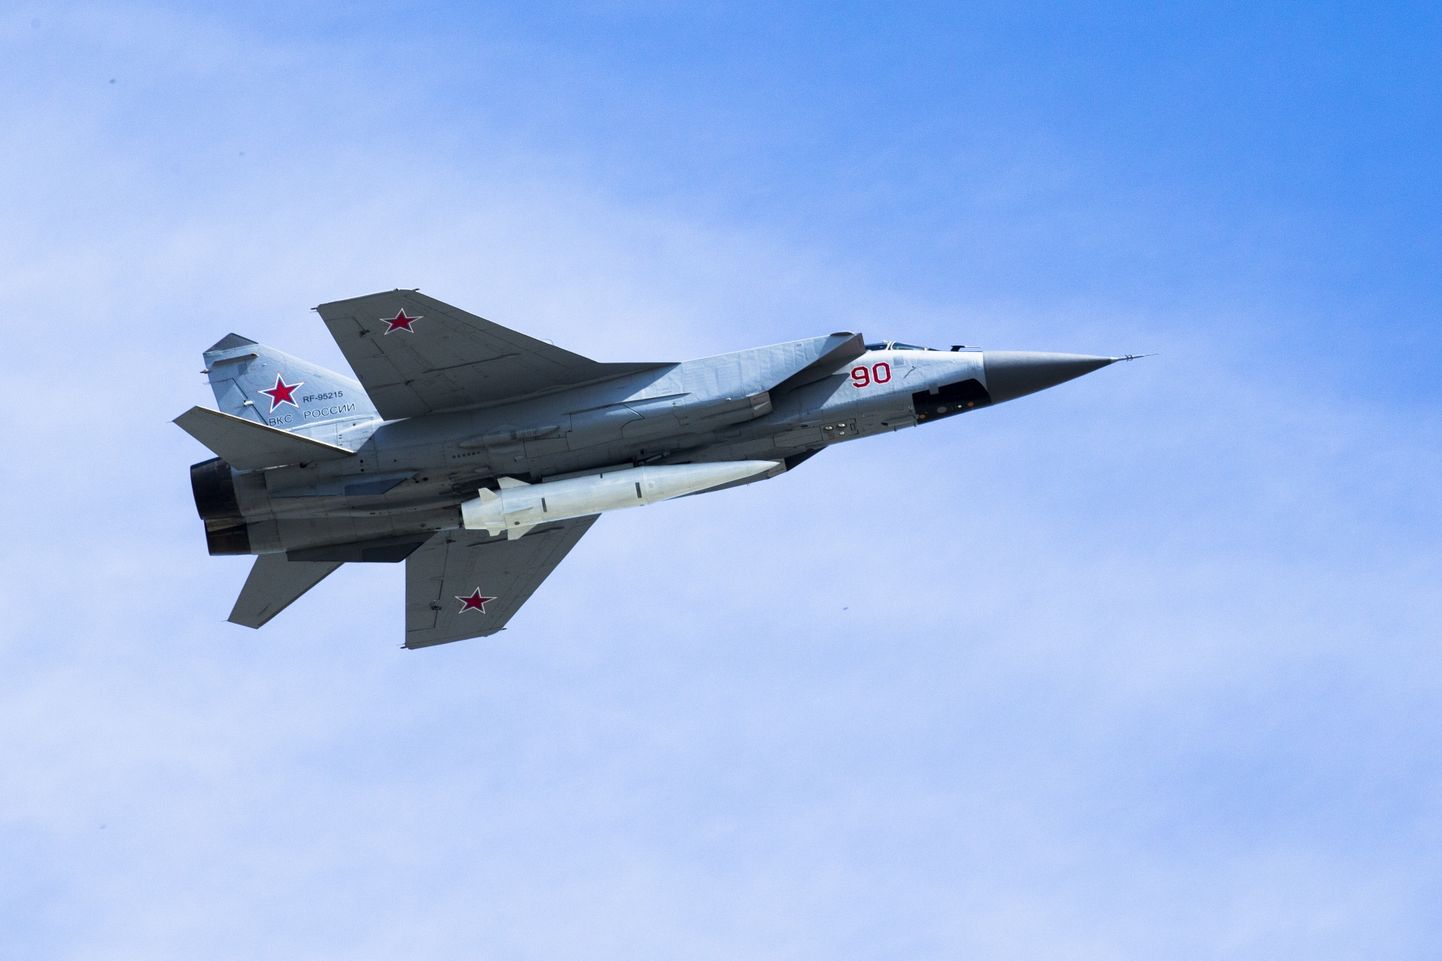 Venemaa õhujõudude MiG-31K reaktiivlennuk kandmas hüperheliraketti Kinžal võidupüha sõjaväeparaadi ajal 2018. aastal